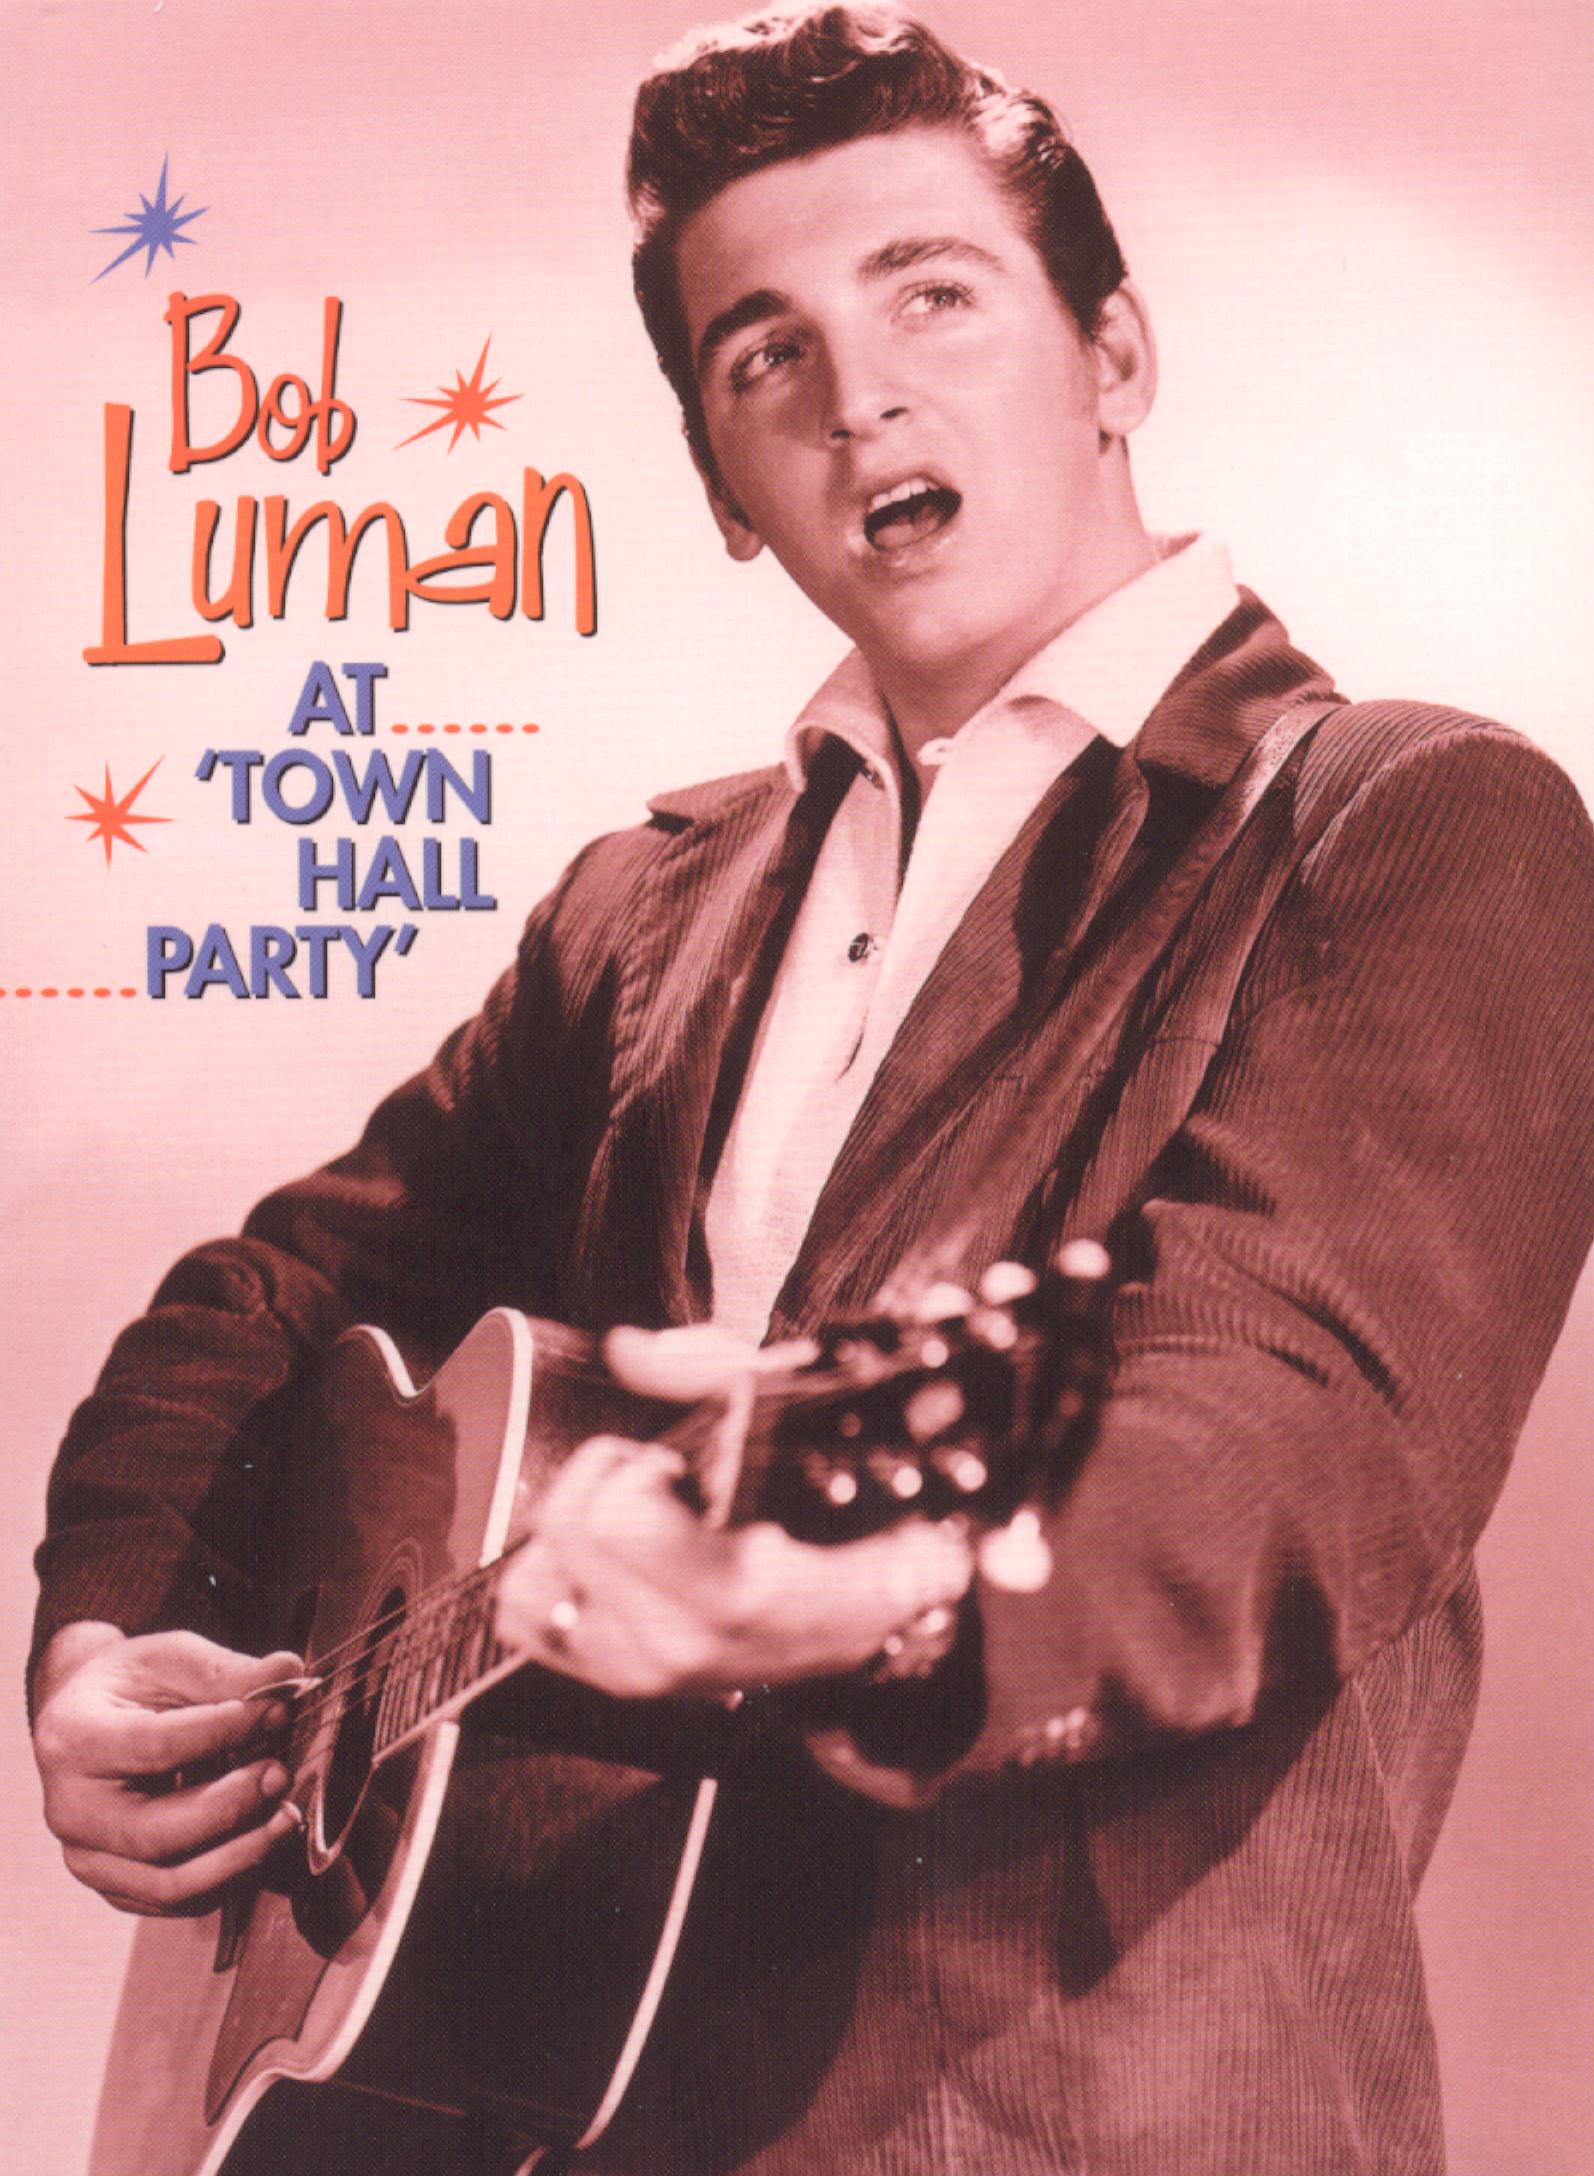 

Bob Luman at Town Hall Party